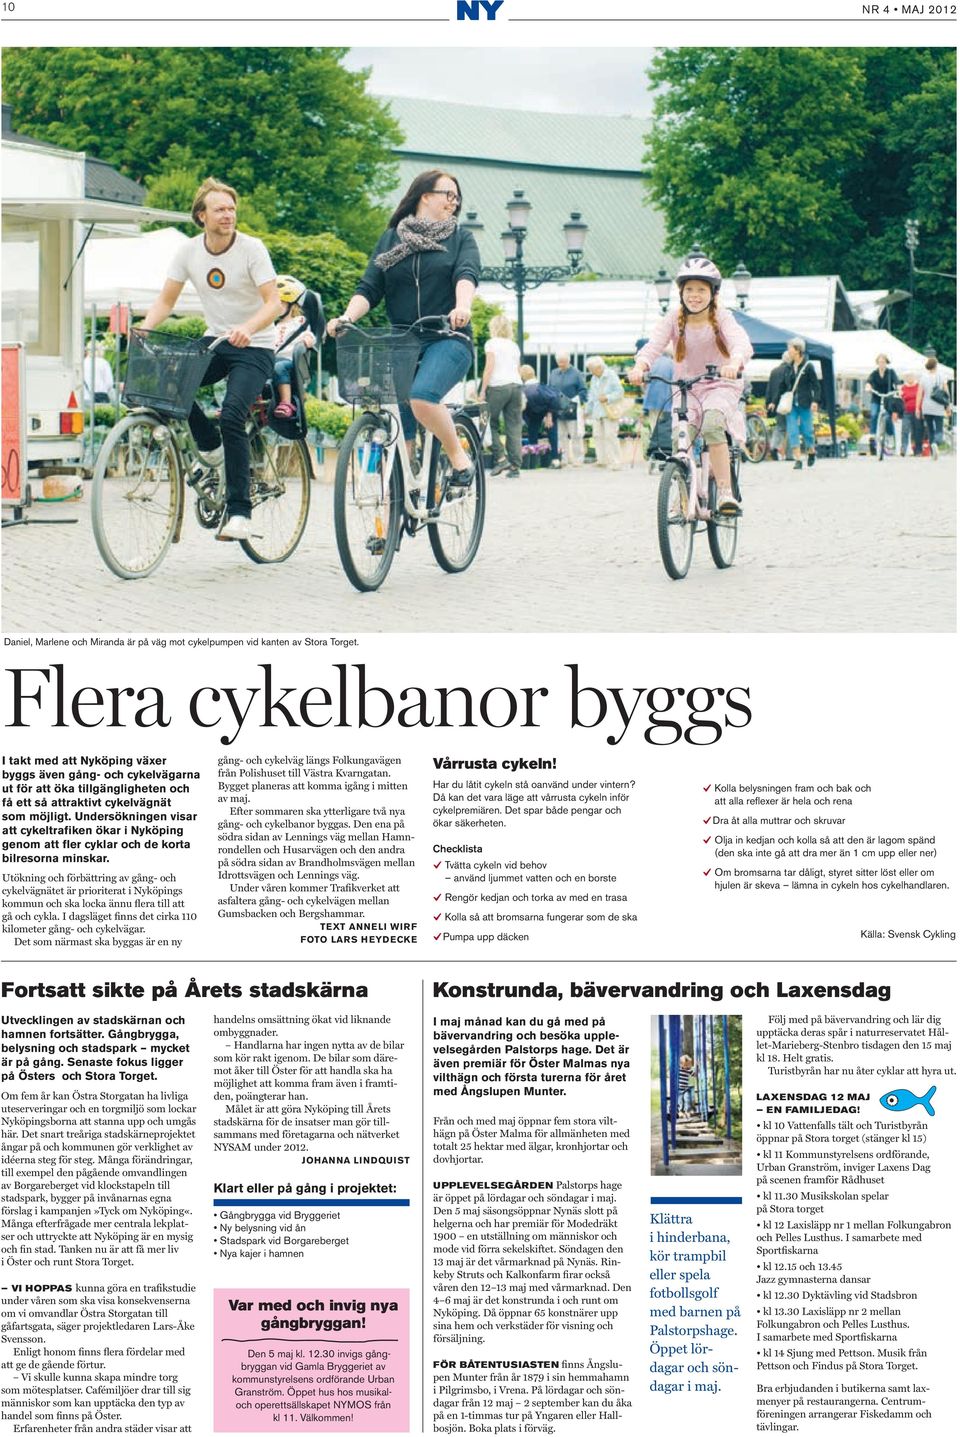 Utökning och förbättring av gång- och cykelvägnätet är prioriterat i Nyköpings kommun och ska locka ännu flera till att gå och cykla. I dagsläget finns det cirka 110 kilometer gång- och cykelvägar.